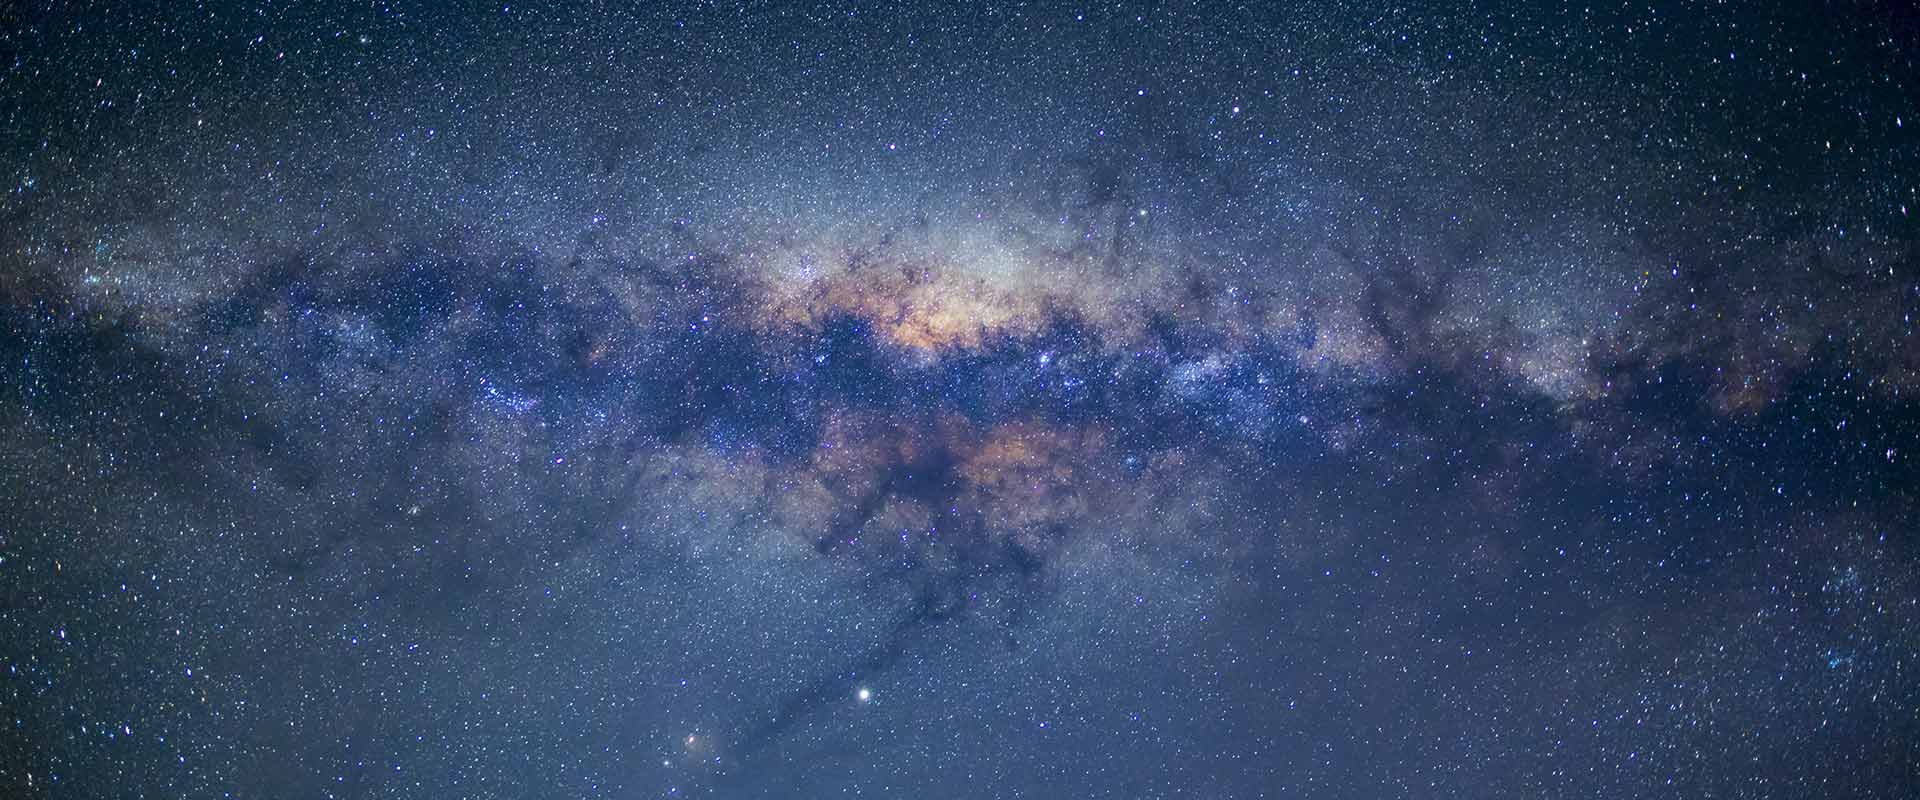 Milky Way over South Australia by @lightcast (via IG)